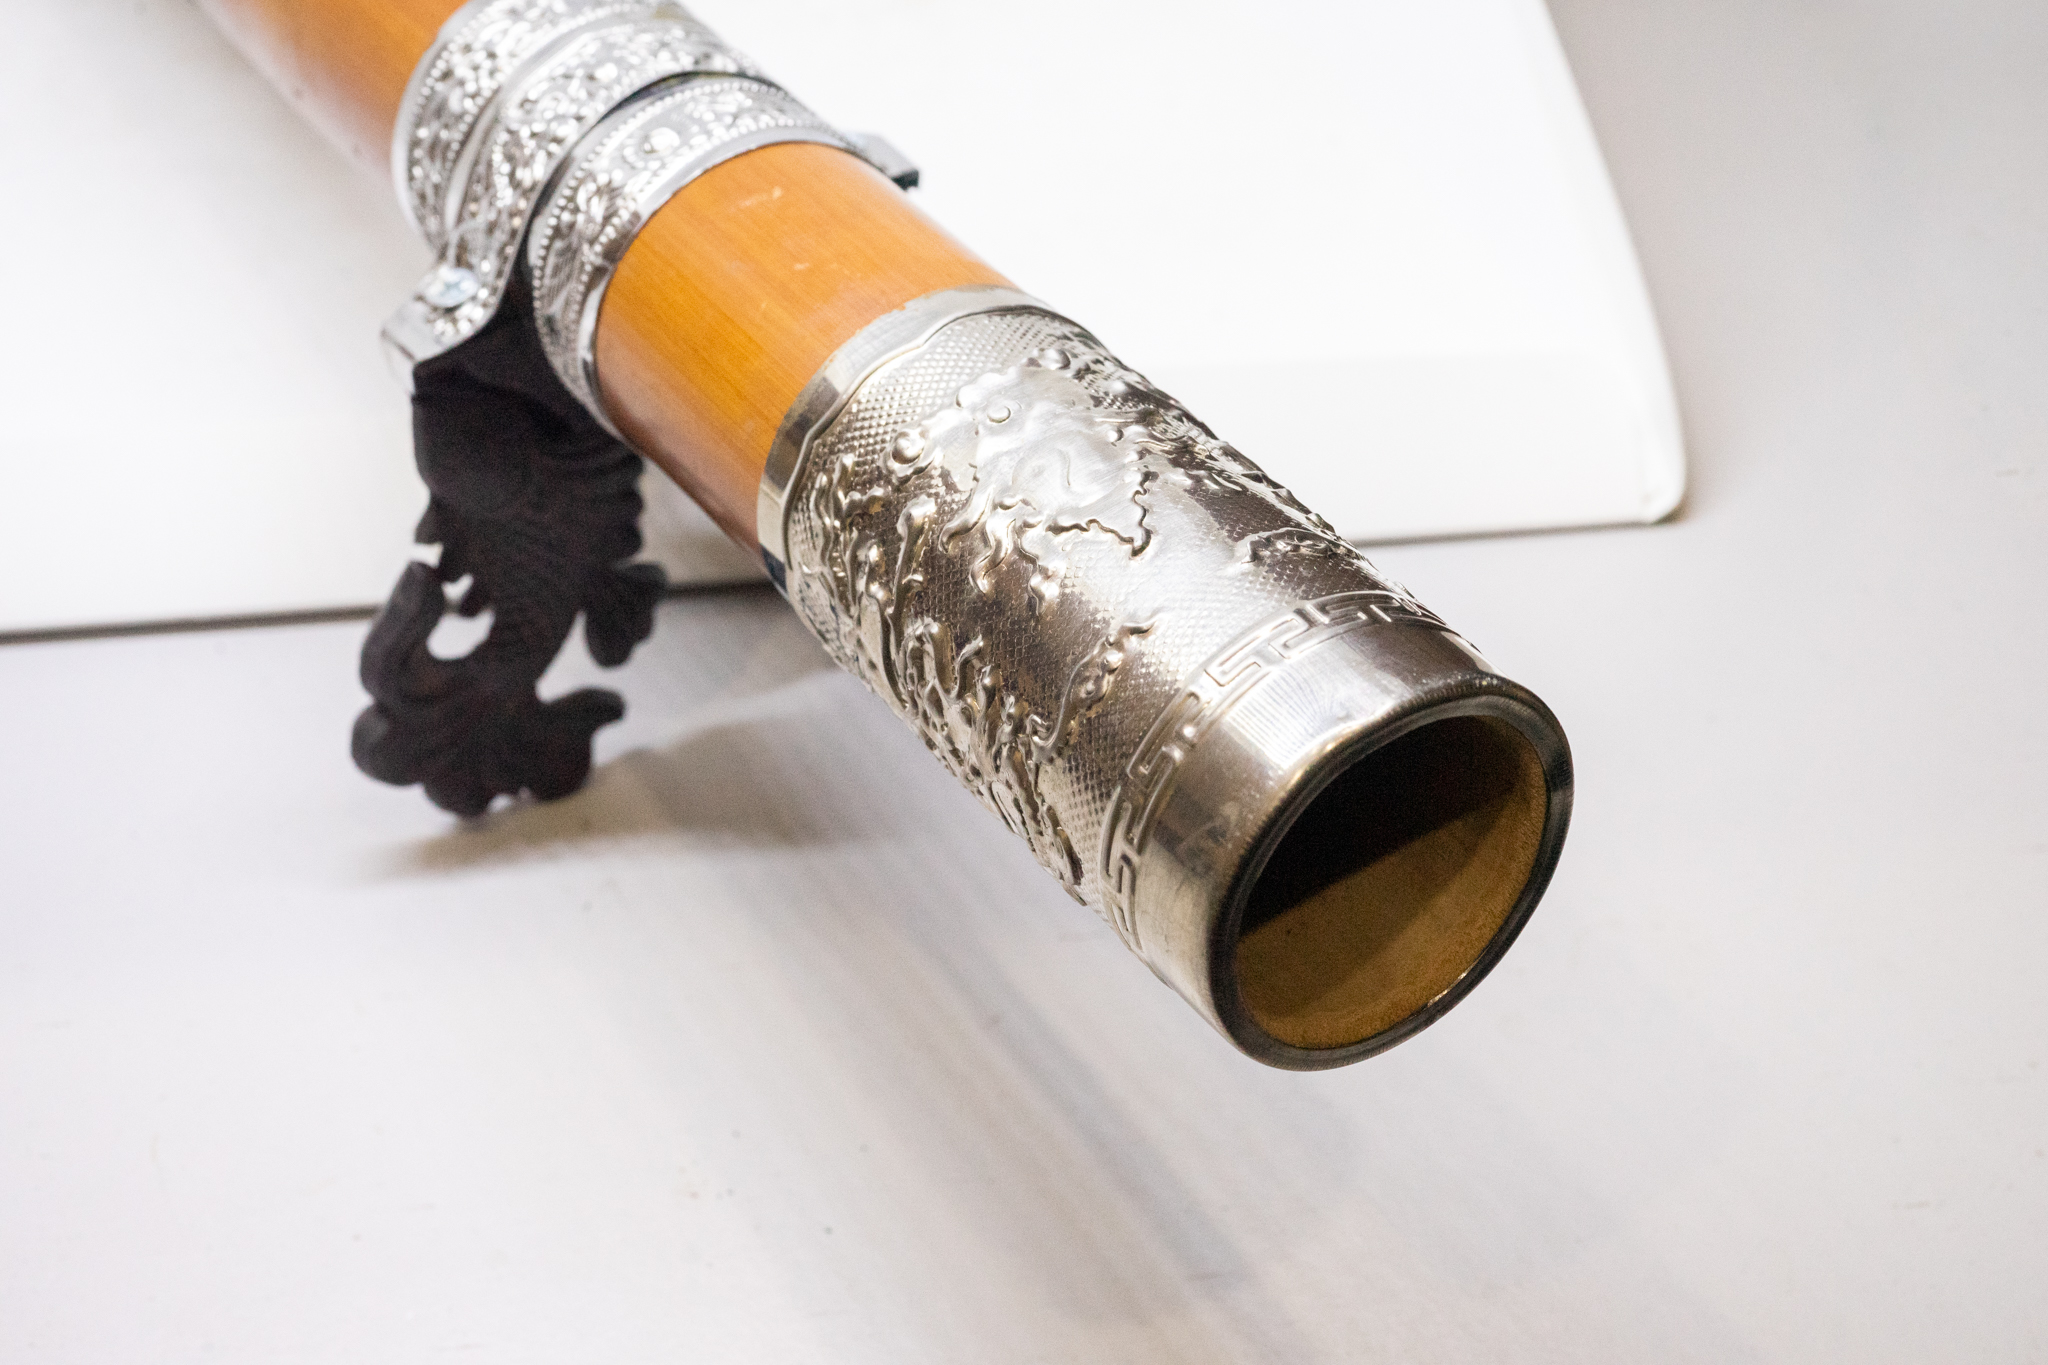 Điếu cày hút thuốc bằng tre bọc bạc với chân điếu họa tiết cá chép và nõ điếu từ gỗ trắc tặng kèm 1 gói thuốc lào